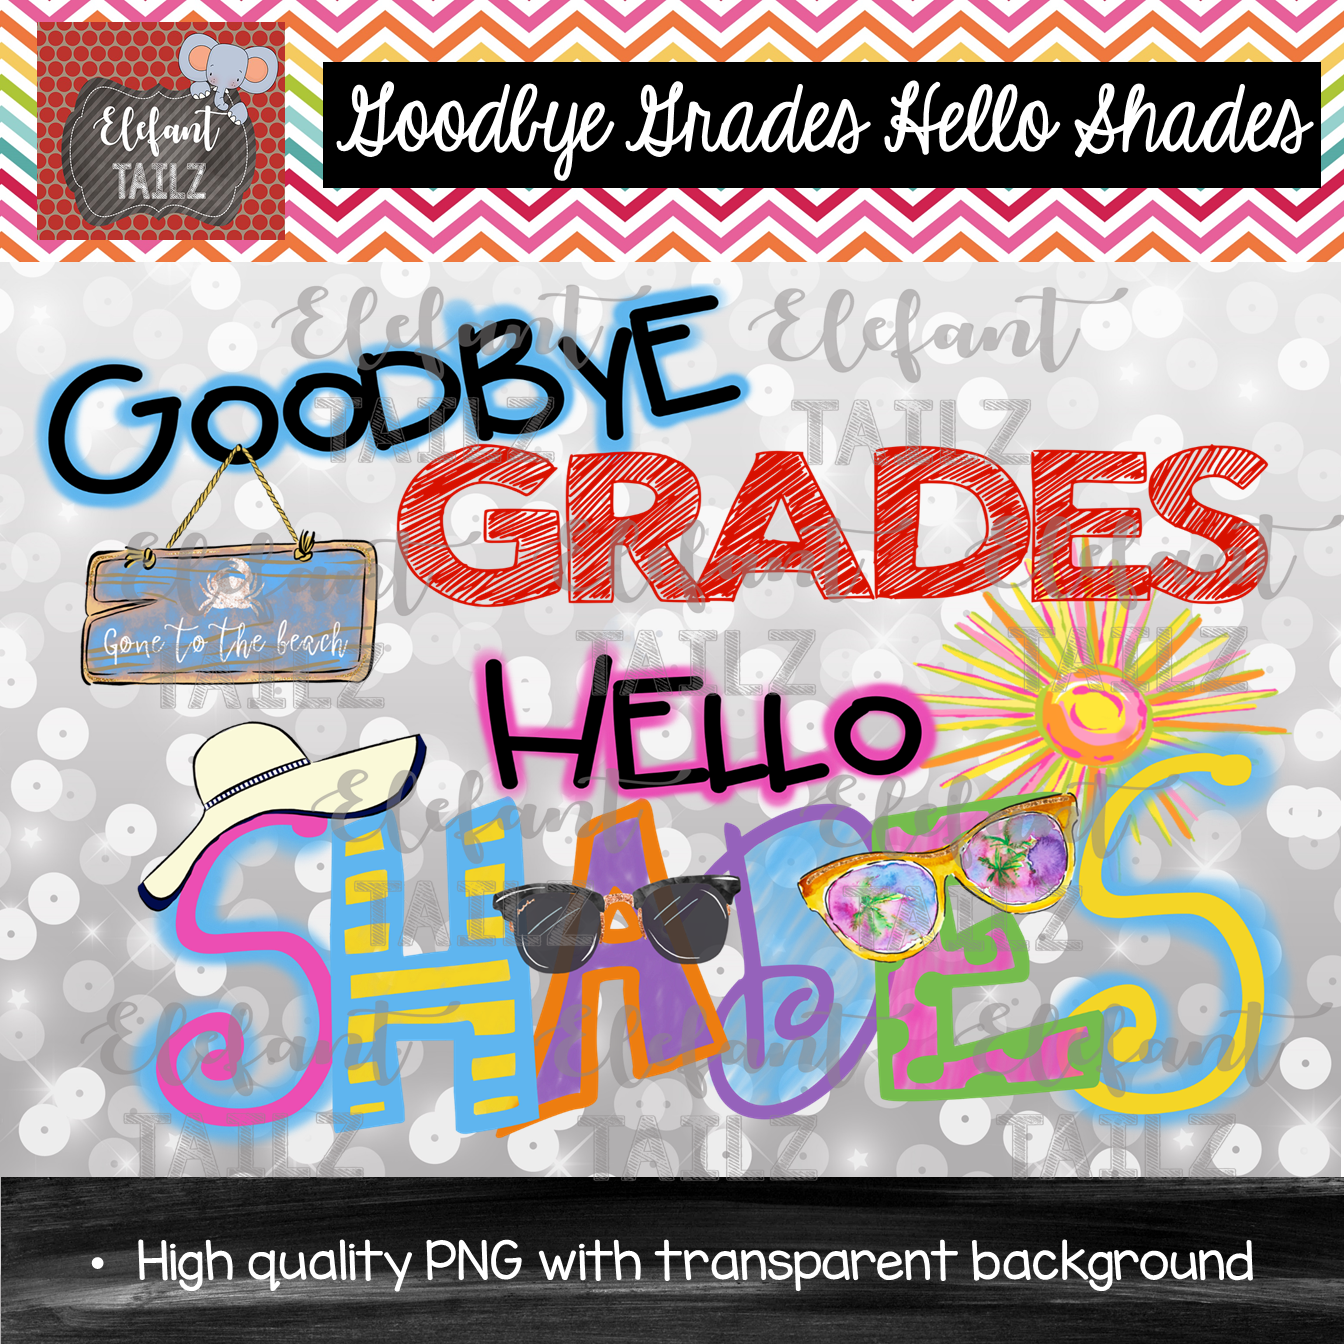 Goodbye Grades, Hello Shades